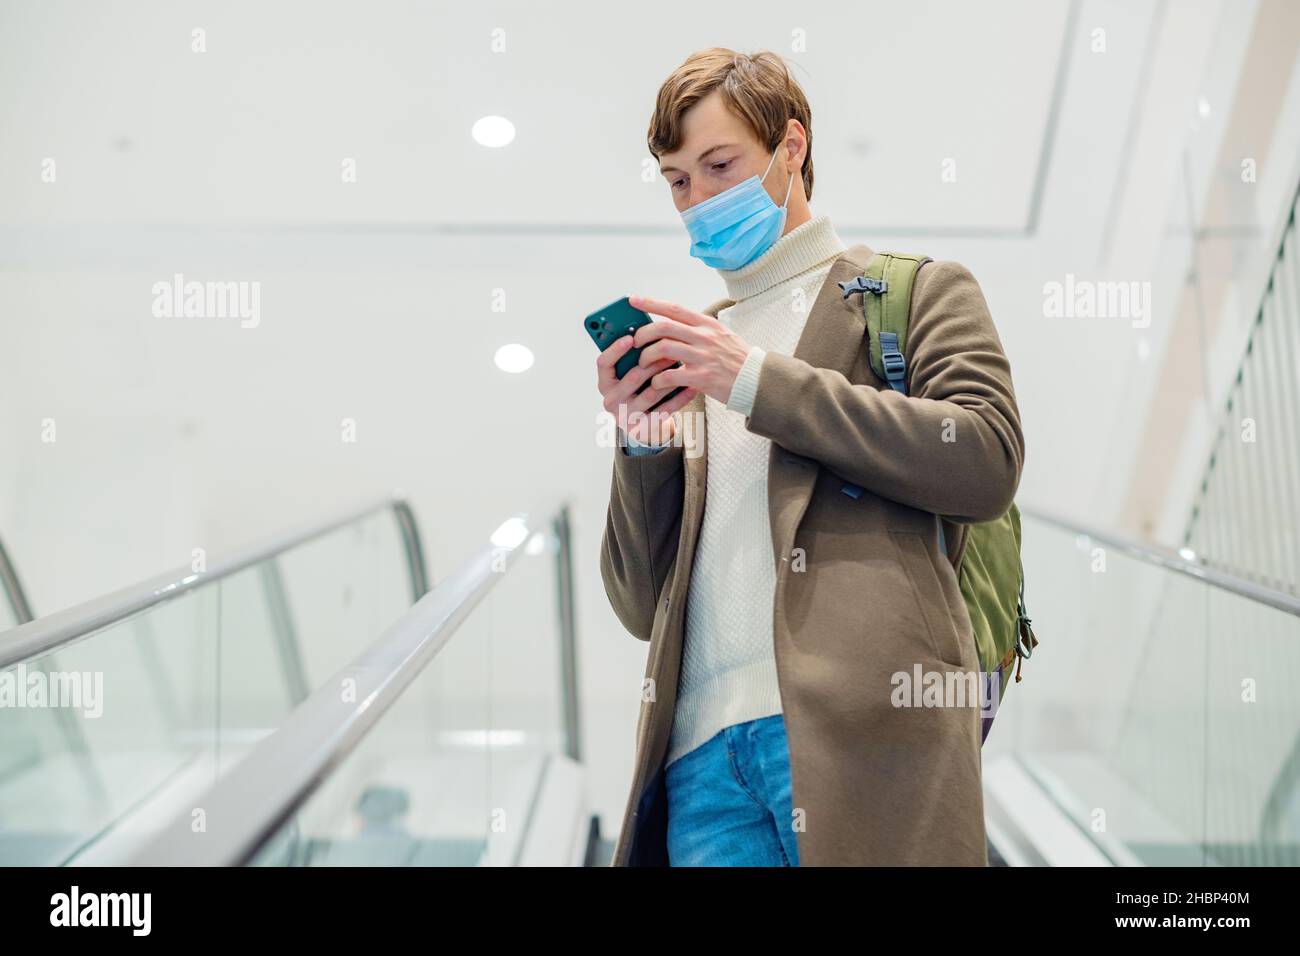 hombre moderno con un abrigo marrón con una mochila y una máscara monta una escalera mecánica en un centro comercial y mira el teléfono en sus manos Foto de stock